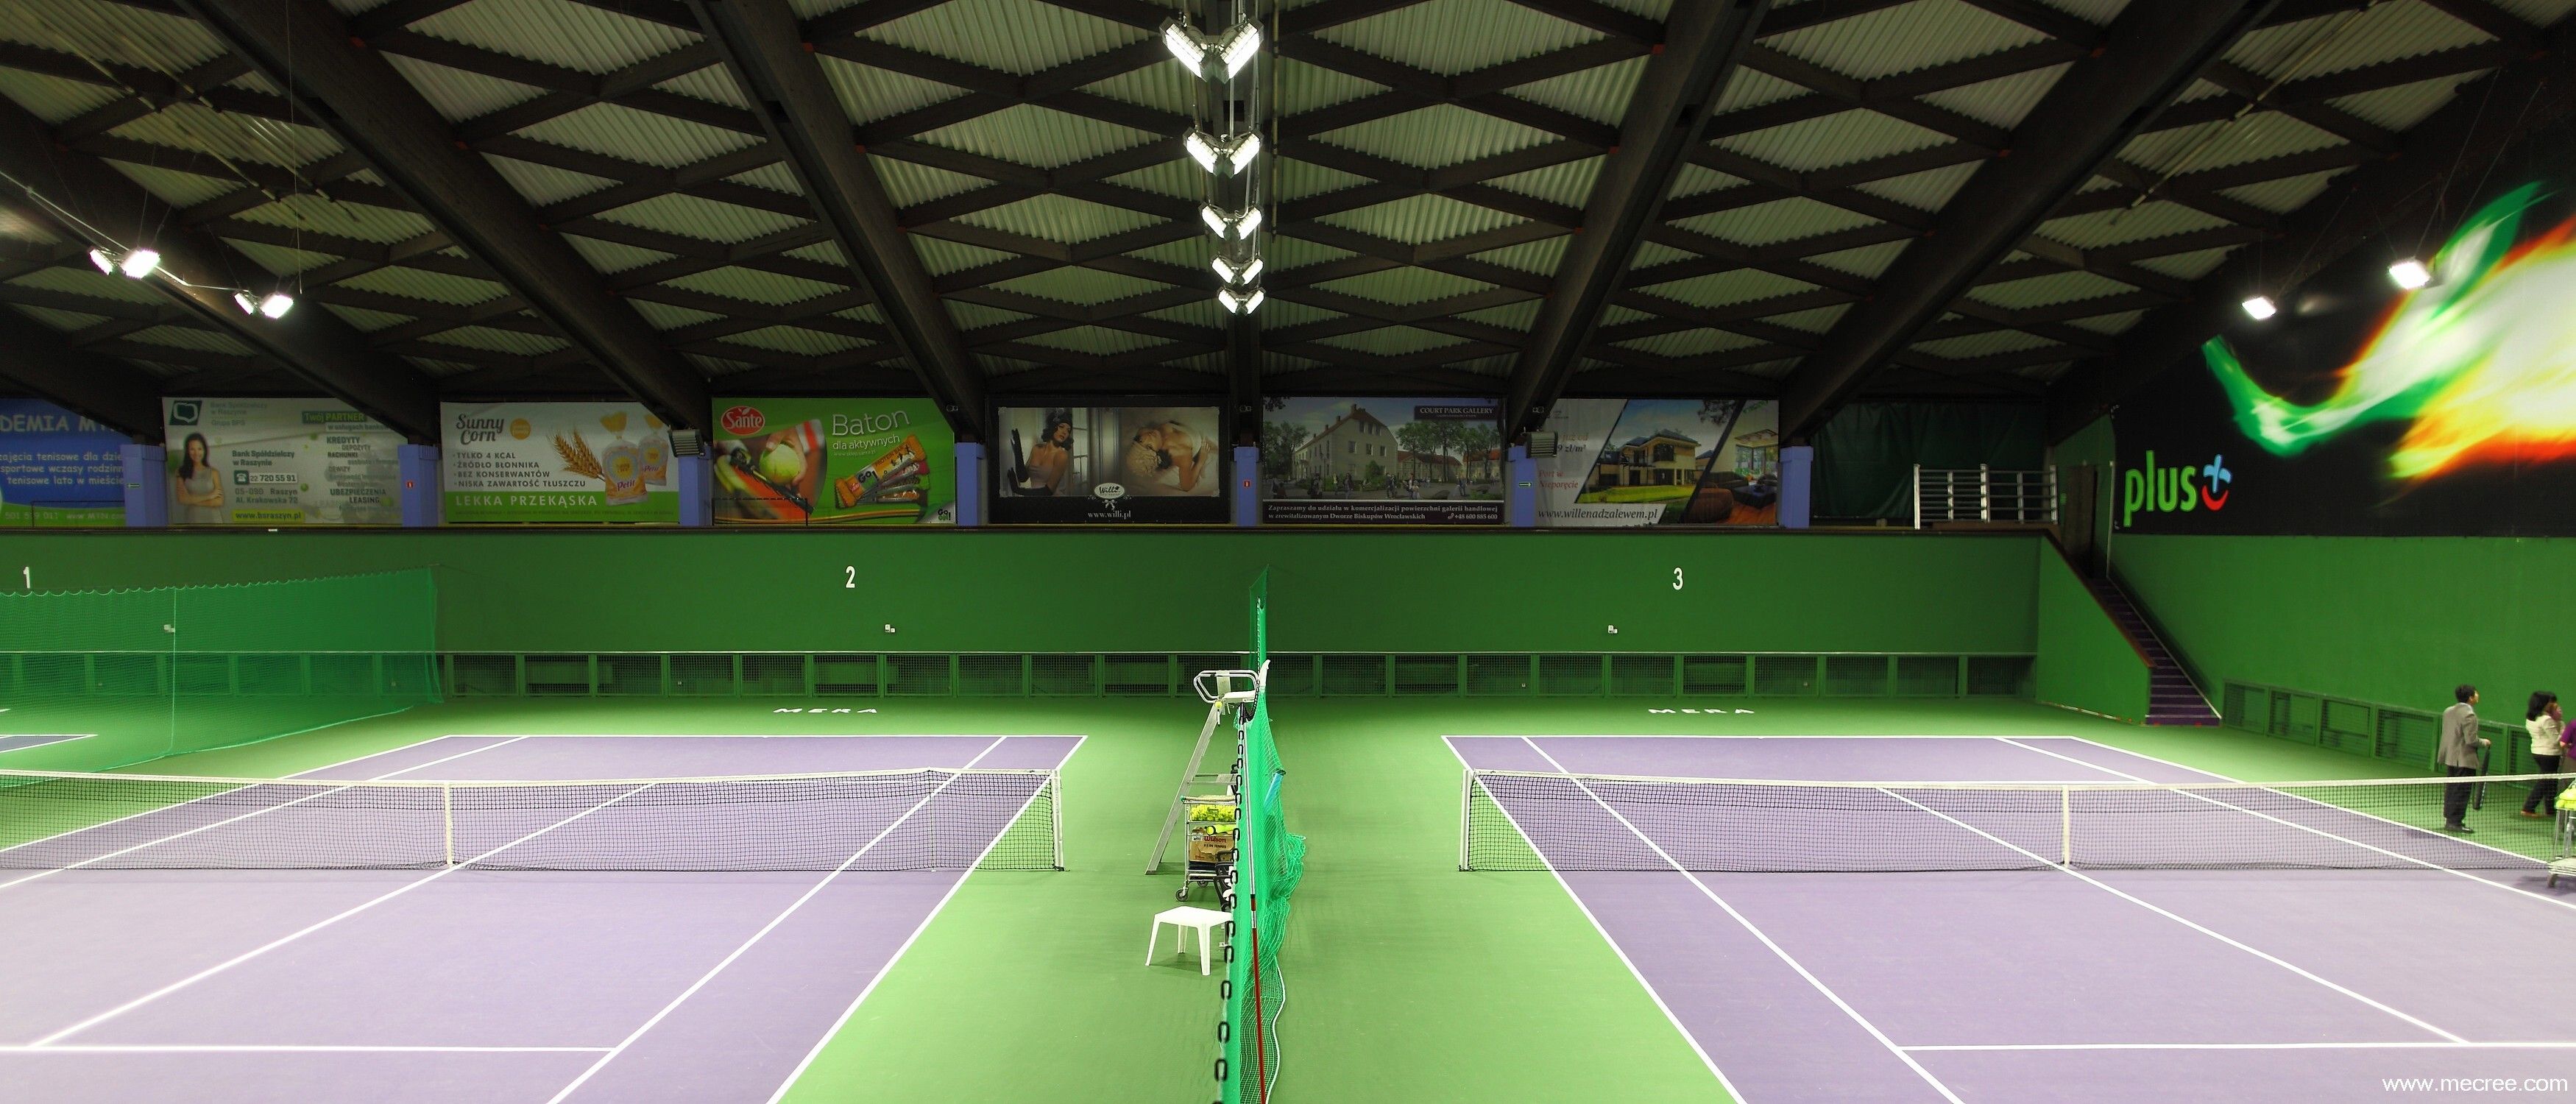 Indoor Tennis Courts Lighting Case Studies